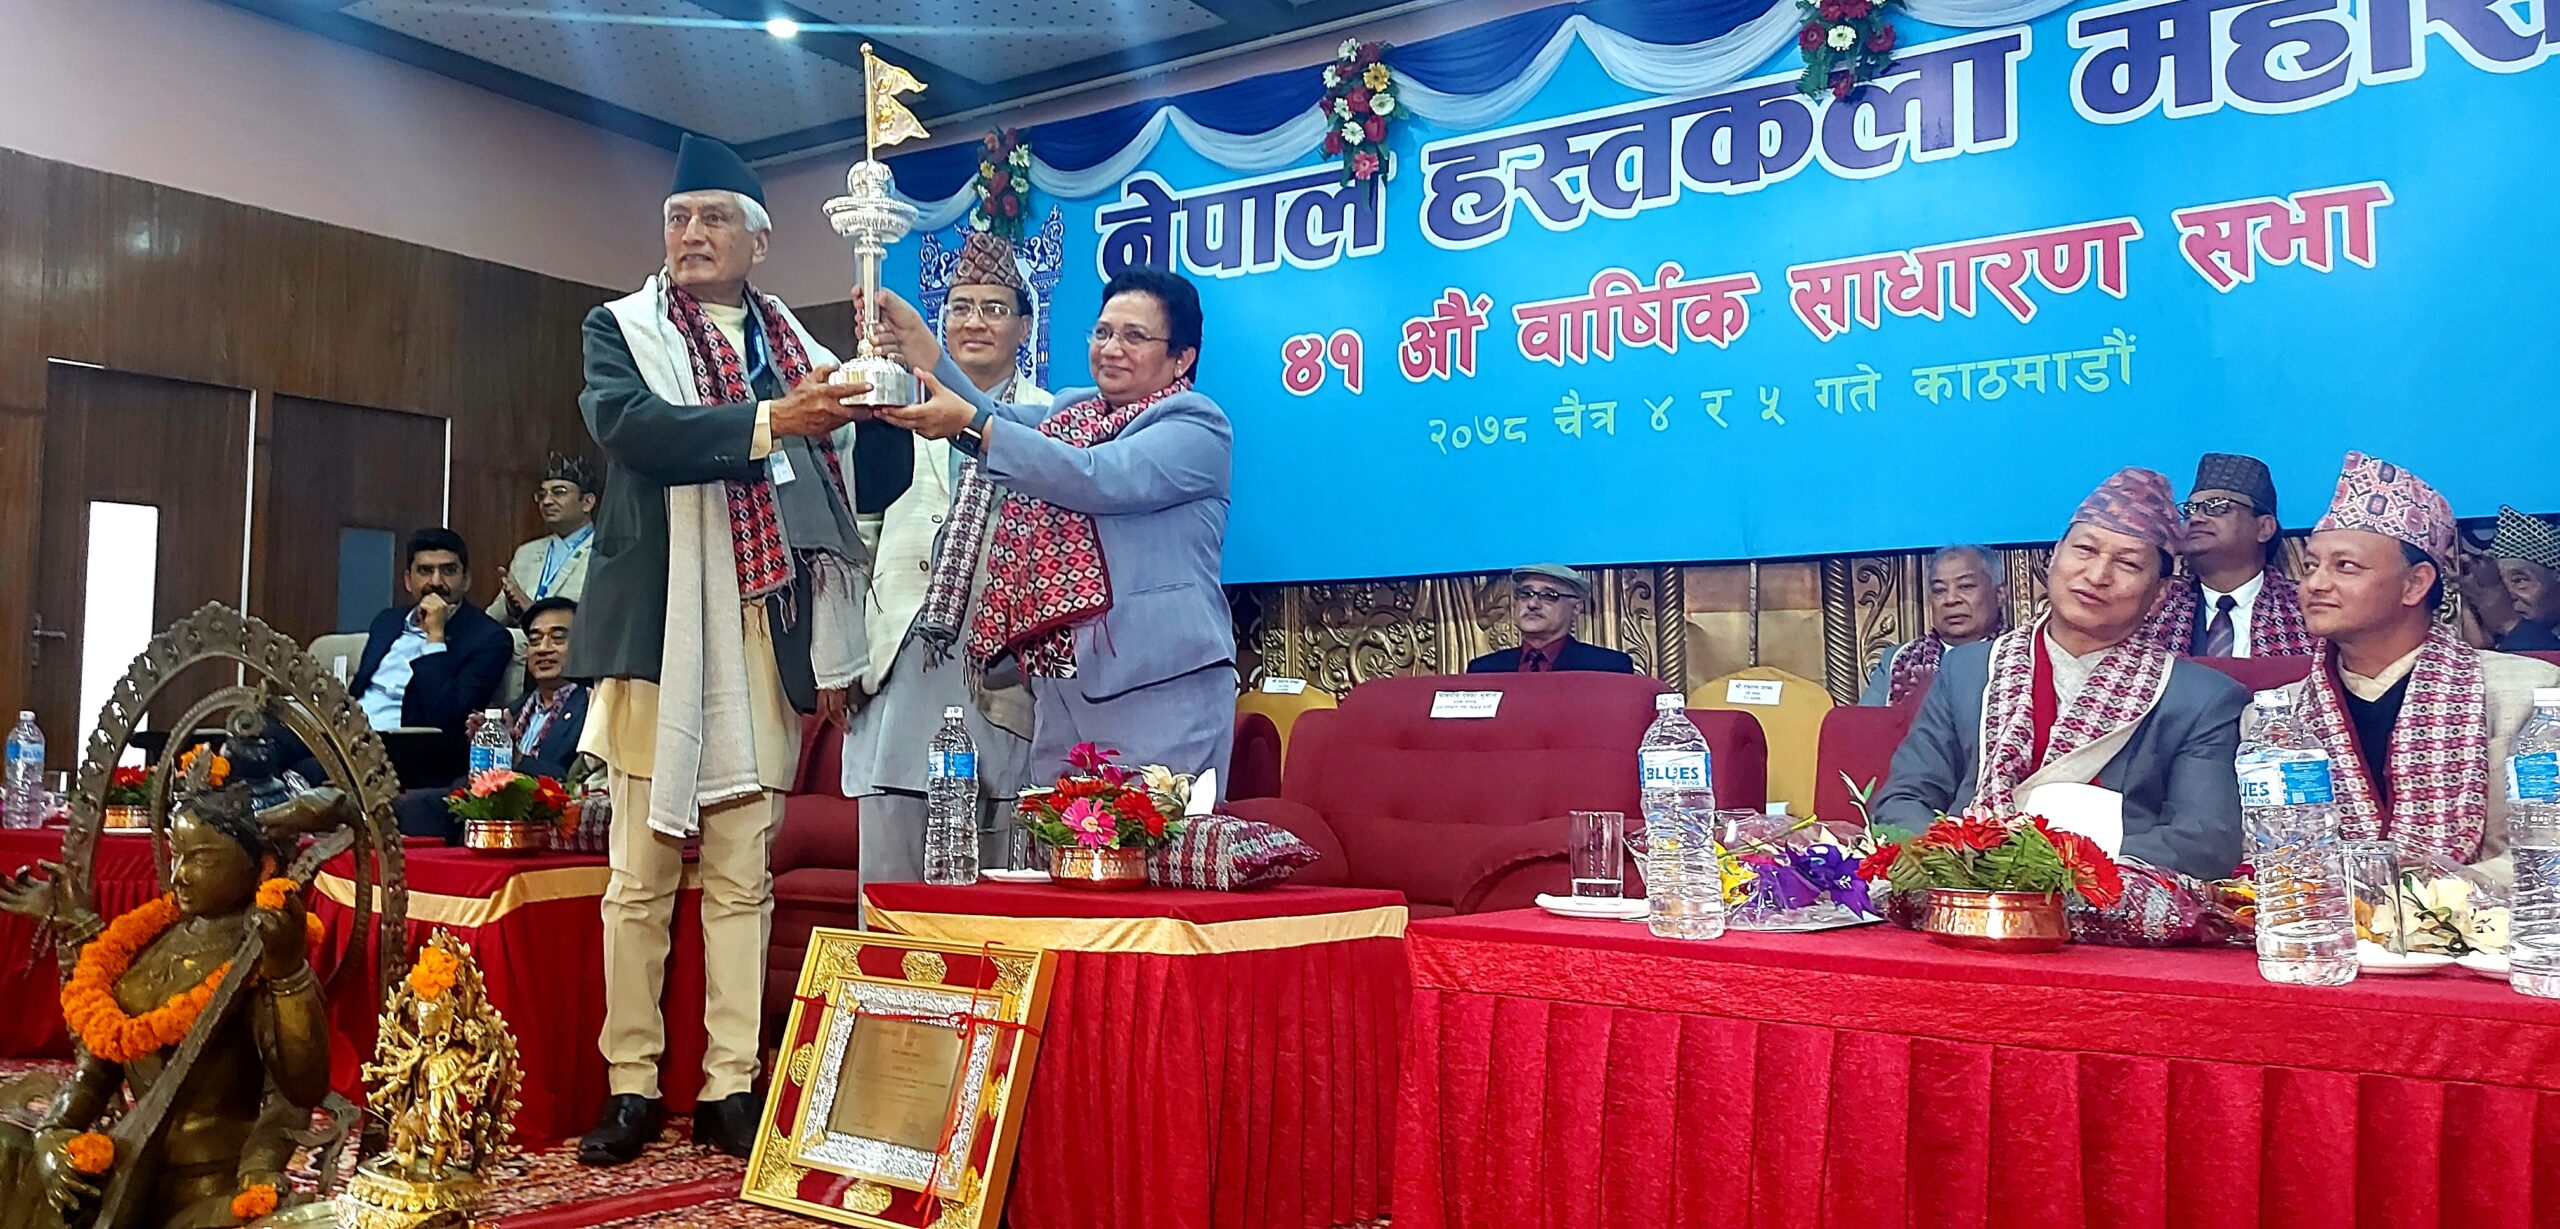 नेपाल हस्तकला महासंघको ४१ औं वार्षिक साधारणसभाको अवसरमा १३ बुँदे माग